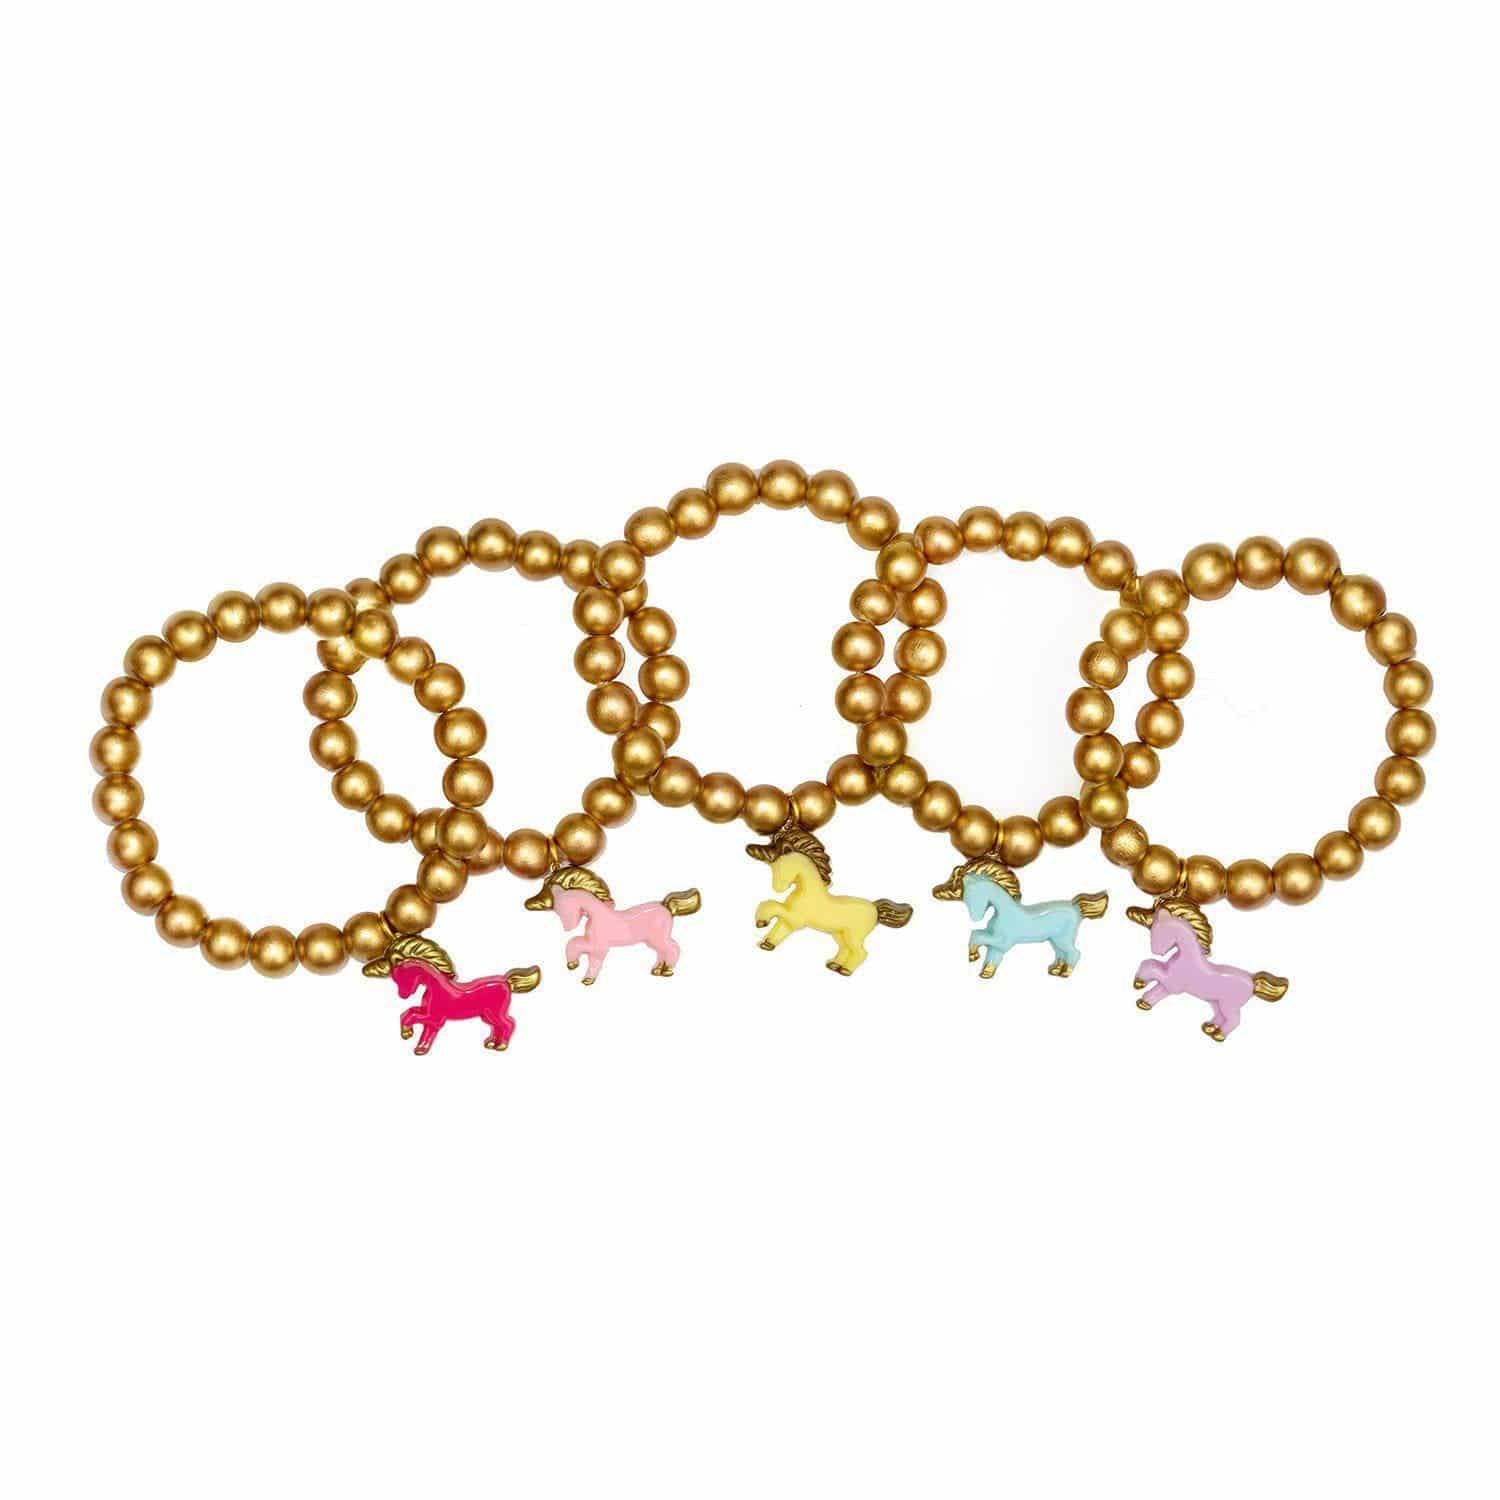 Golden Unicorn Bracelets - Twinkle Twinkle Little One